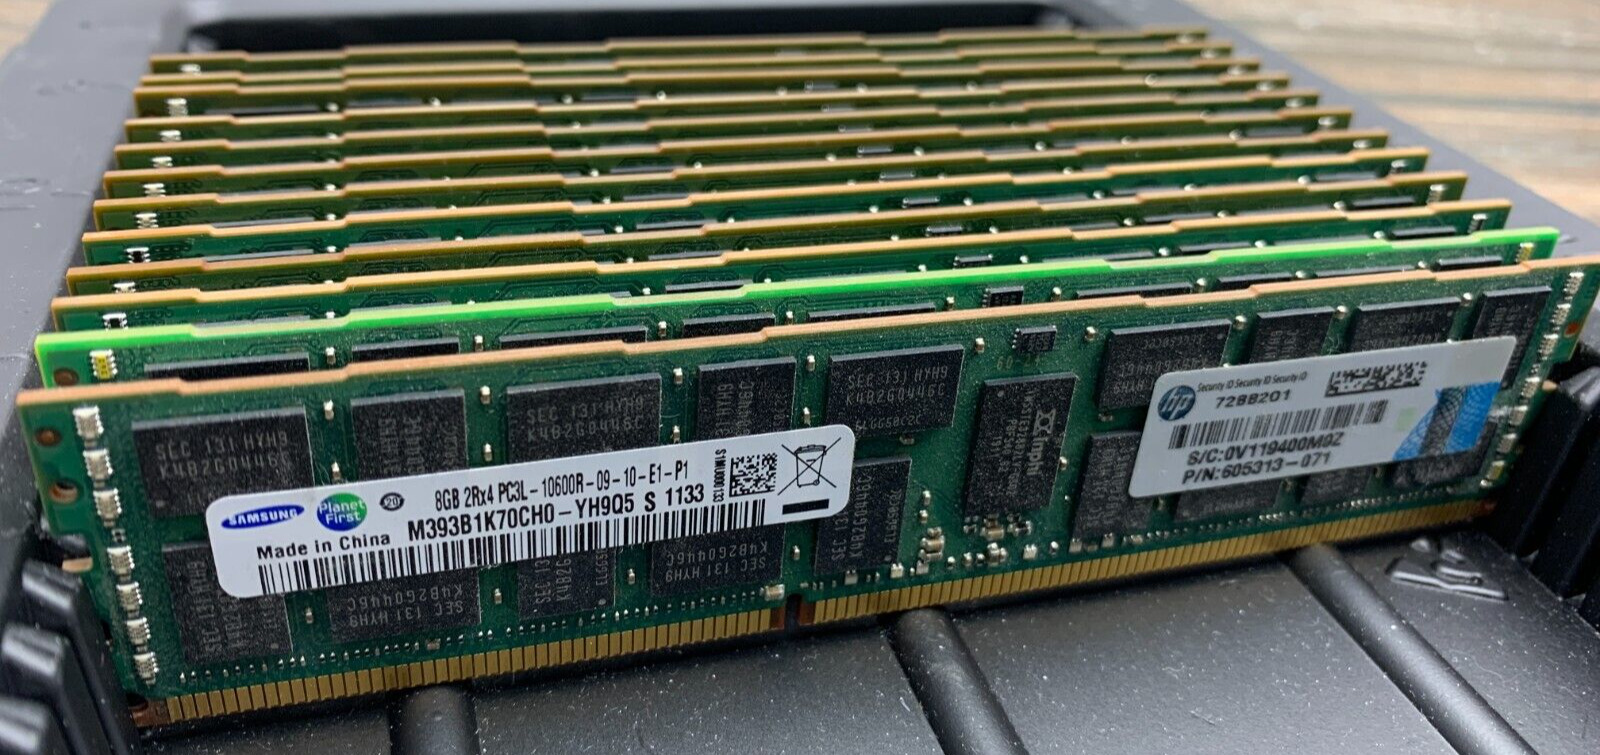 Samsung 96GB (12x8GB) M393B1K70CH0-YH9Q5 605313-071 2Rx4 PC3L-10600R Server RAM